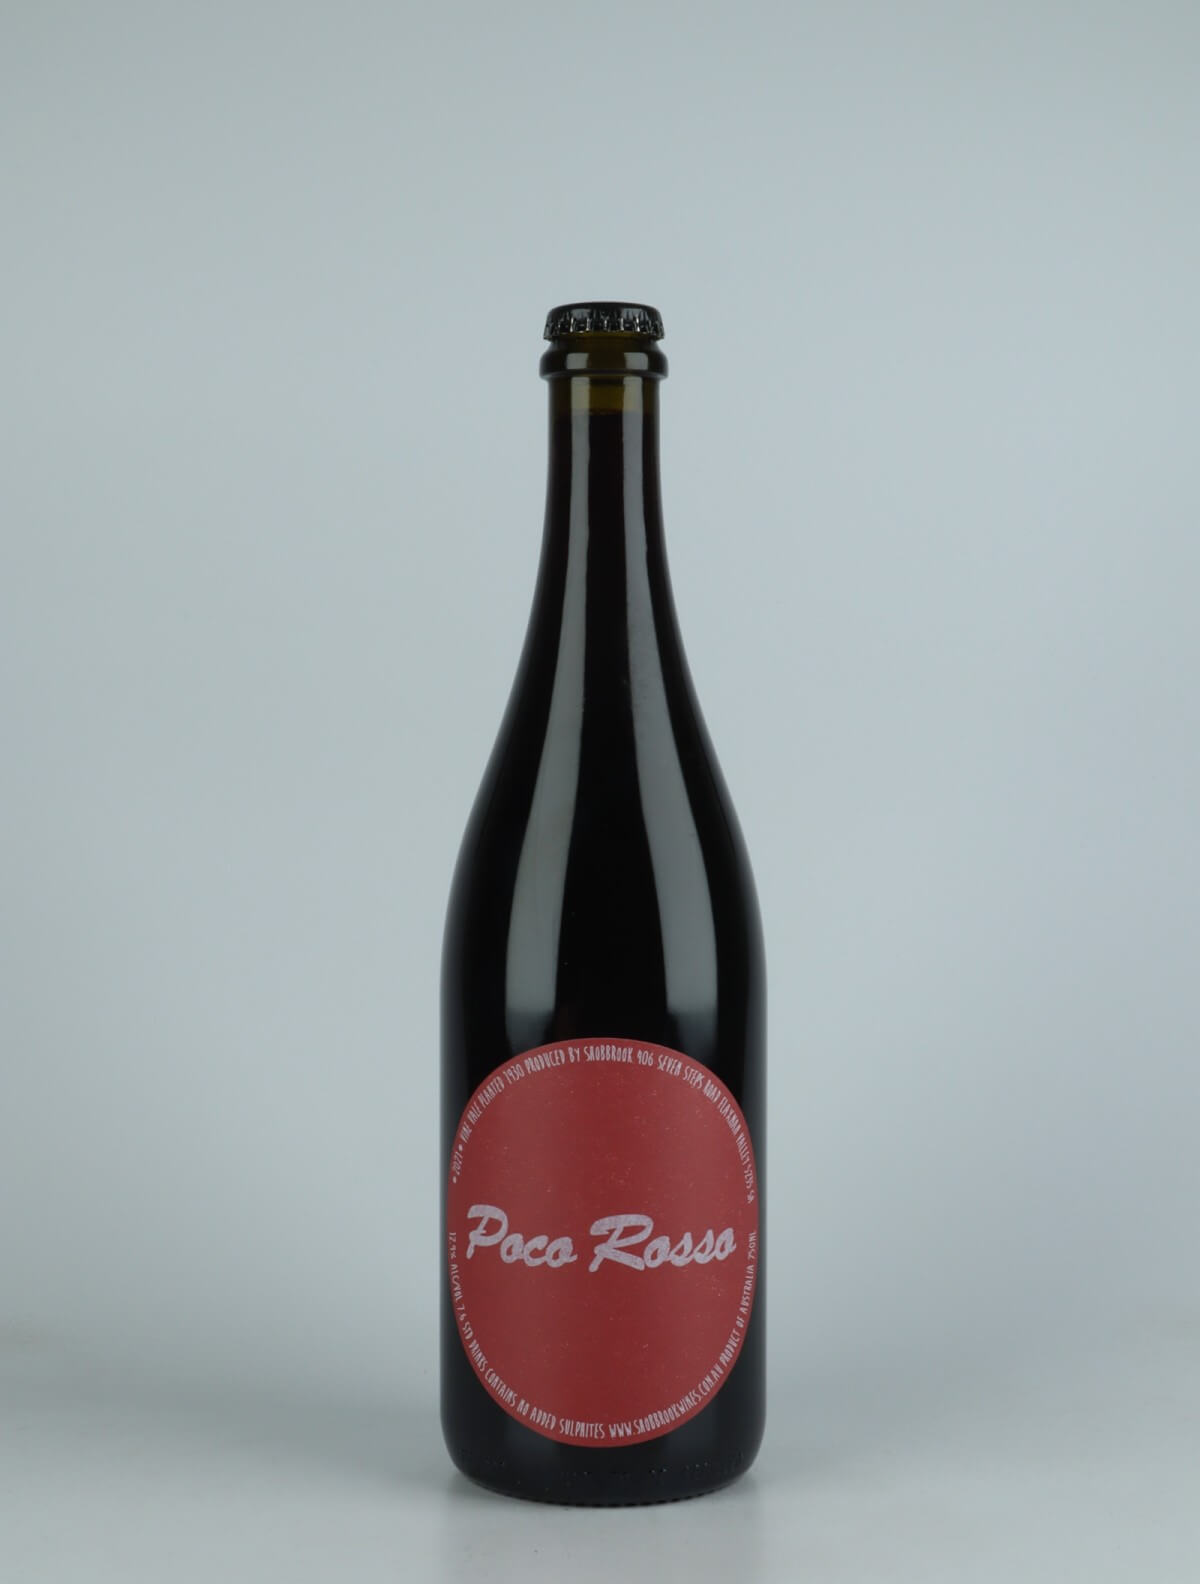 En flaske 2021 Poco Rosso Rødvin fra Tom Shobbrook, Barossa Valley i Australien